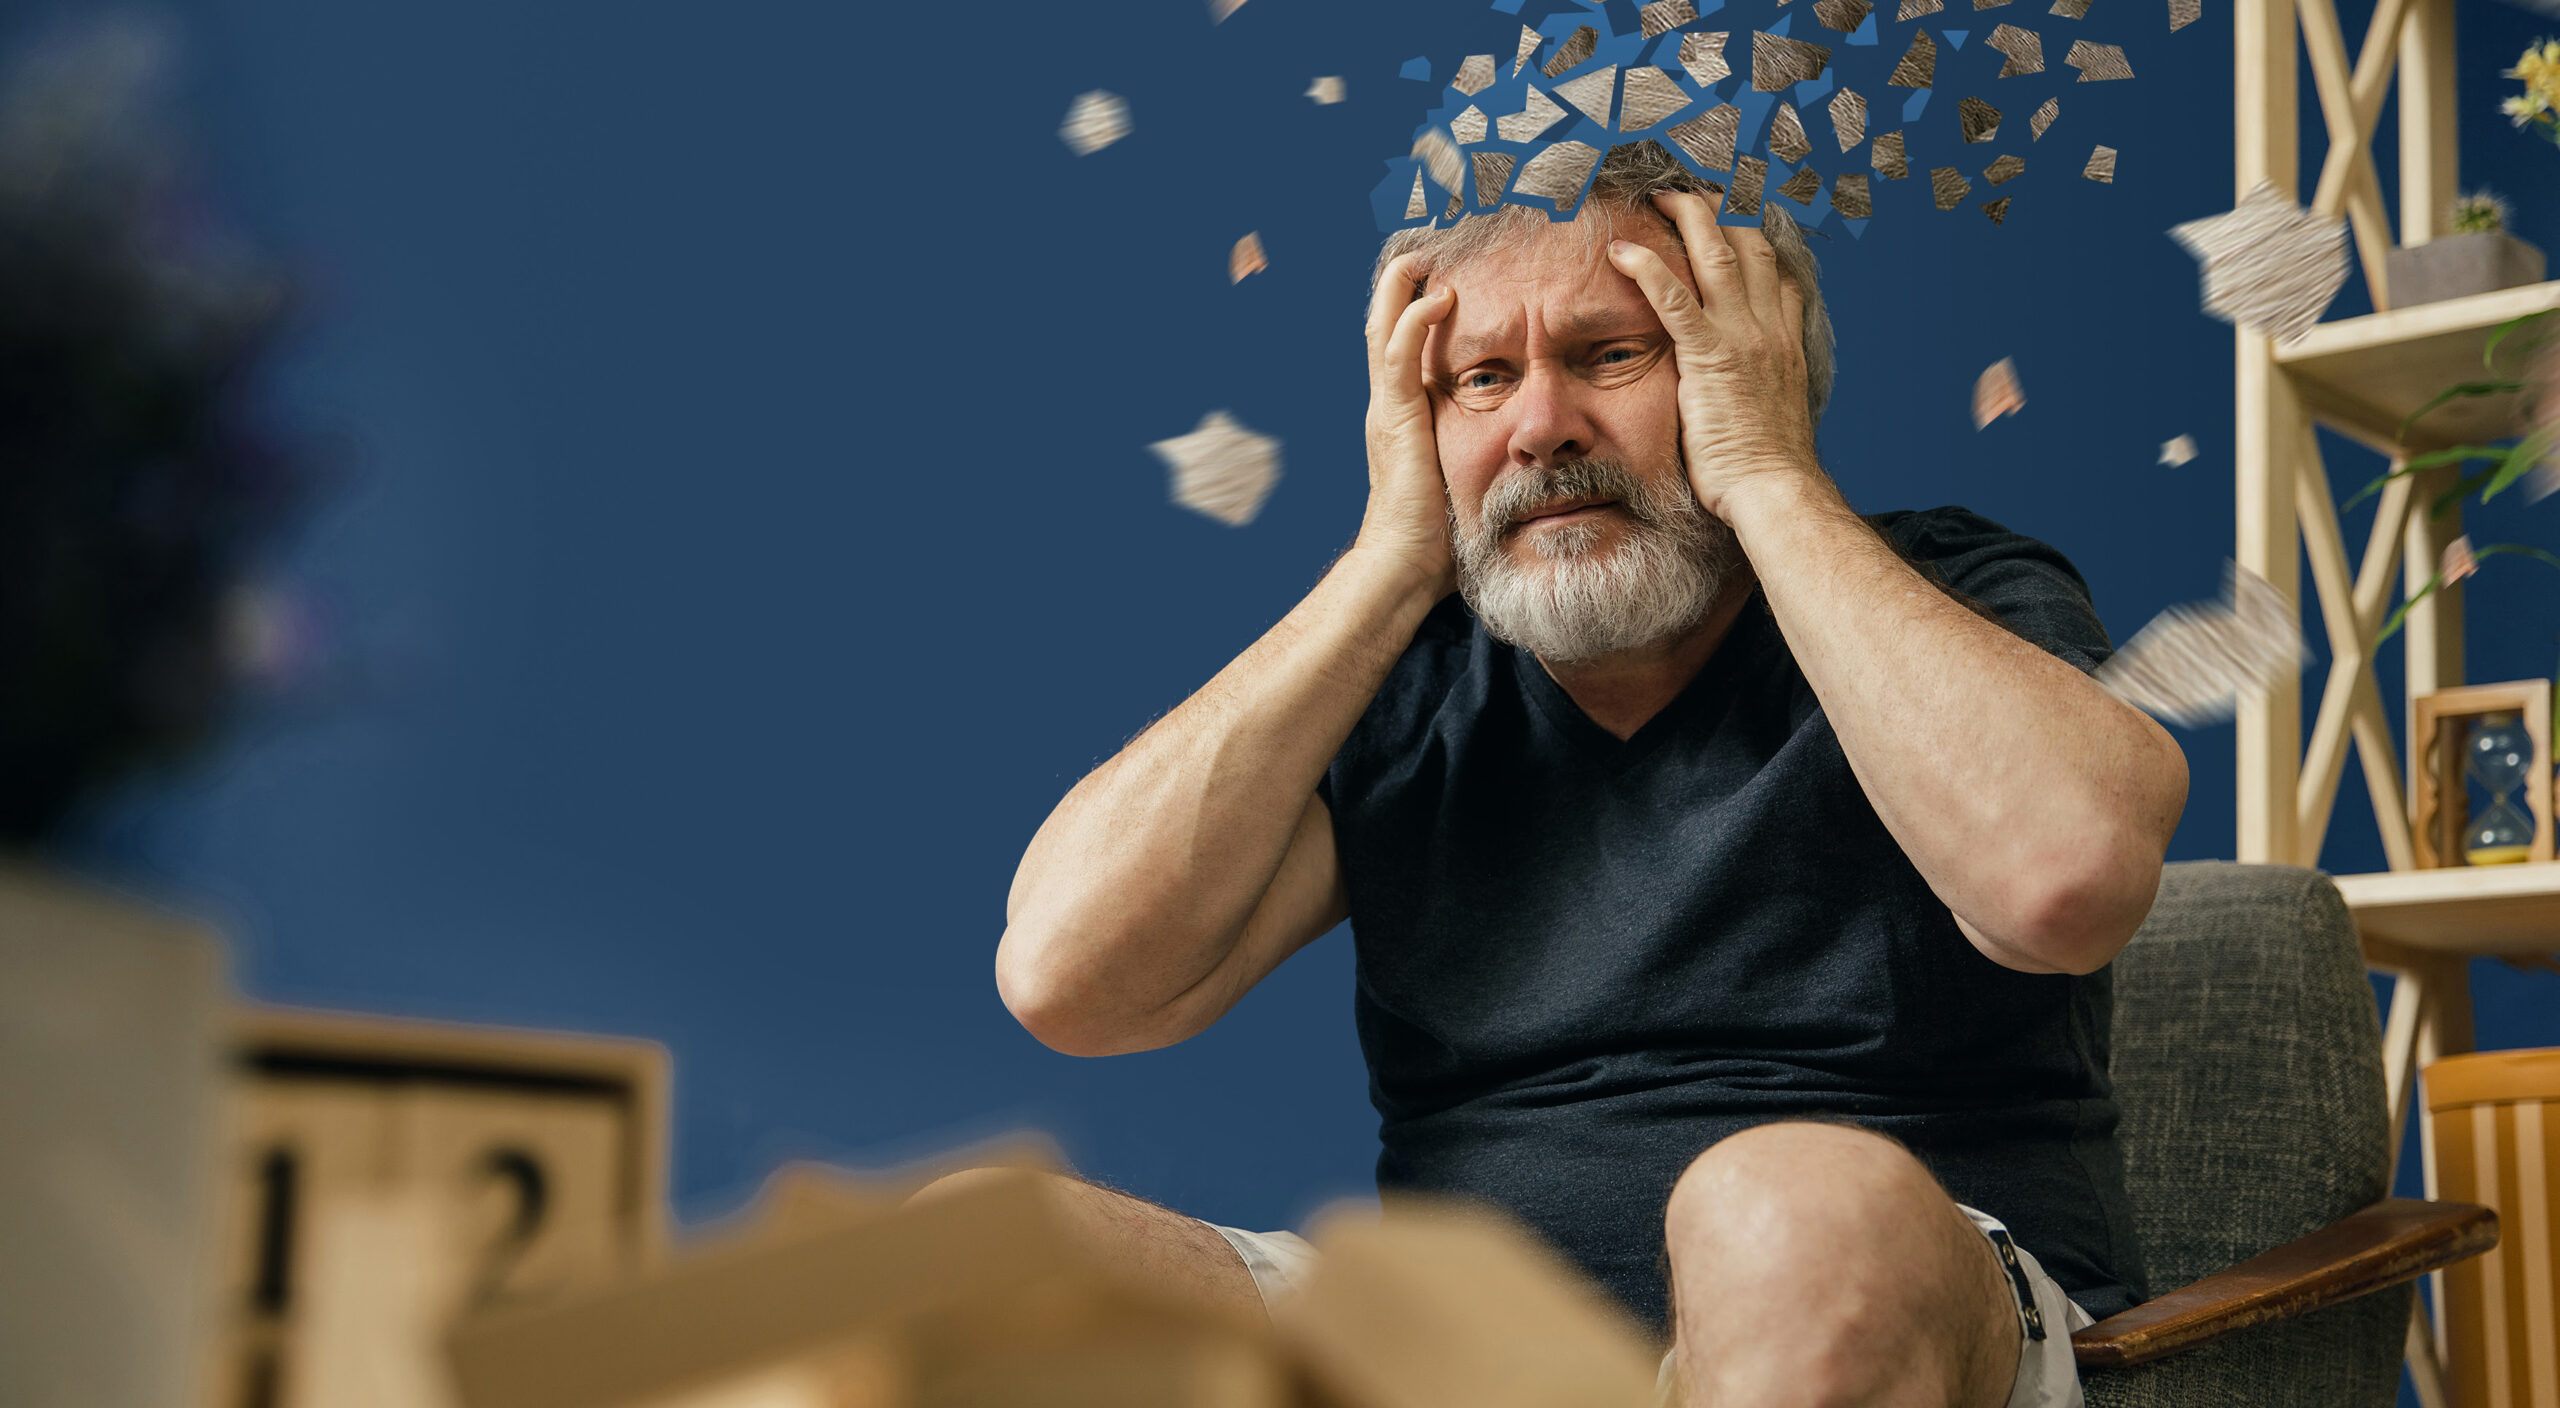 Depressão: O que acontece no cérebro de uma pessoa deprimida?